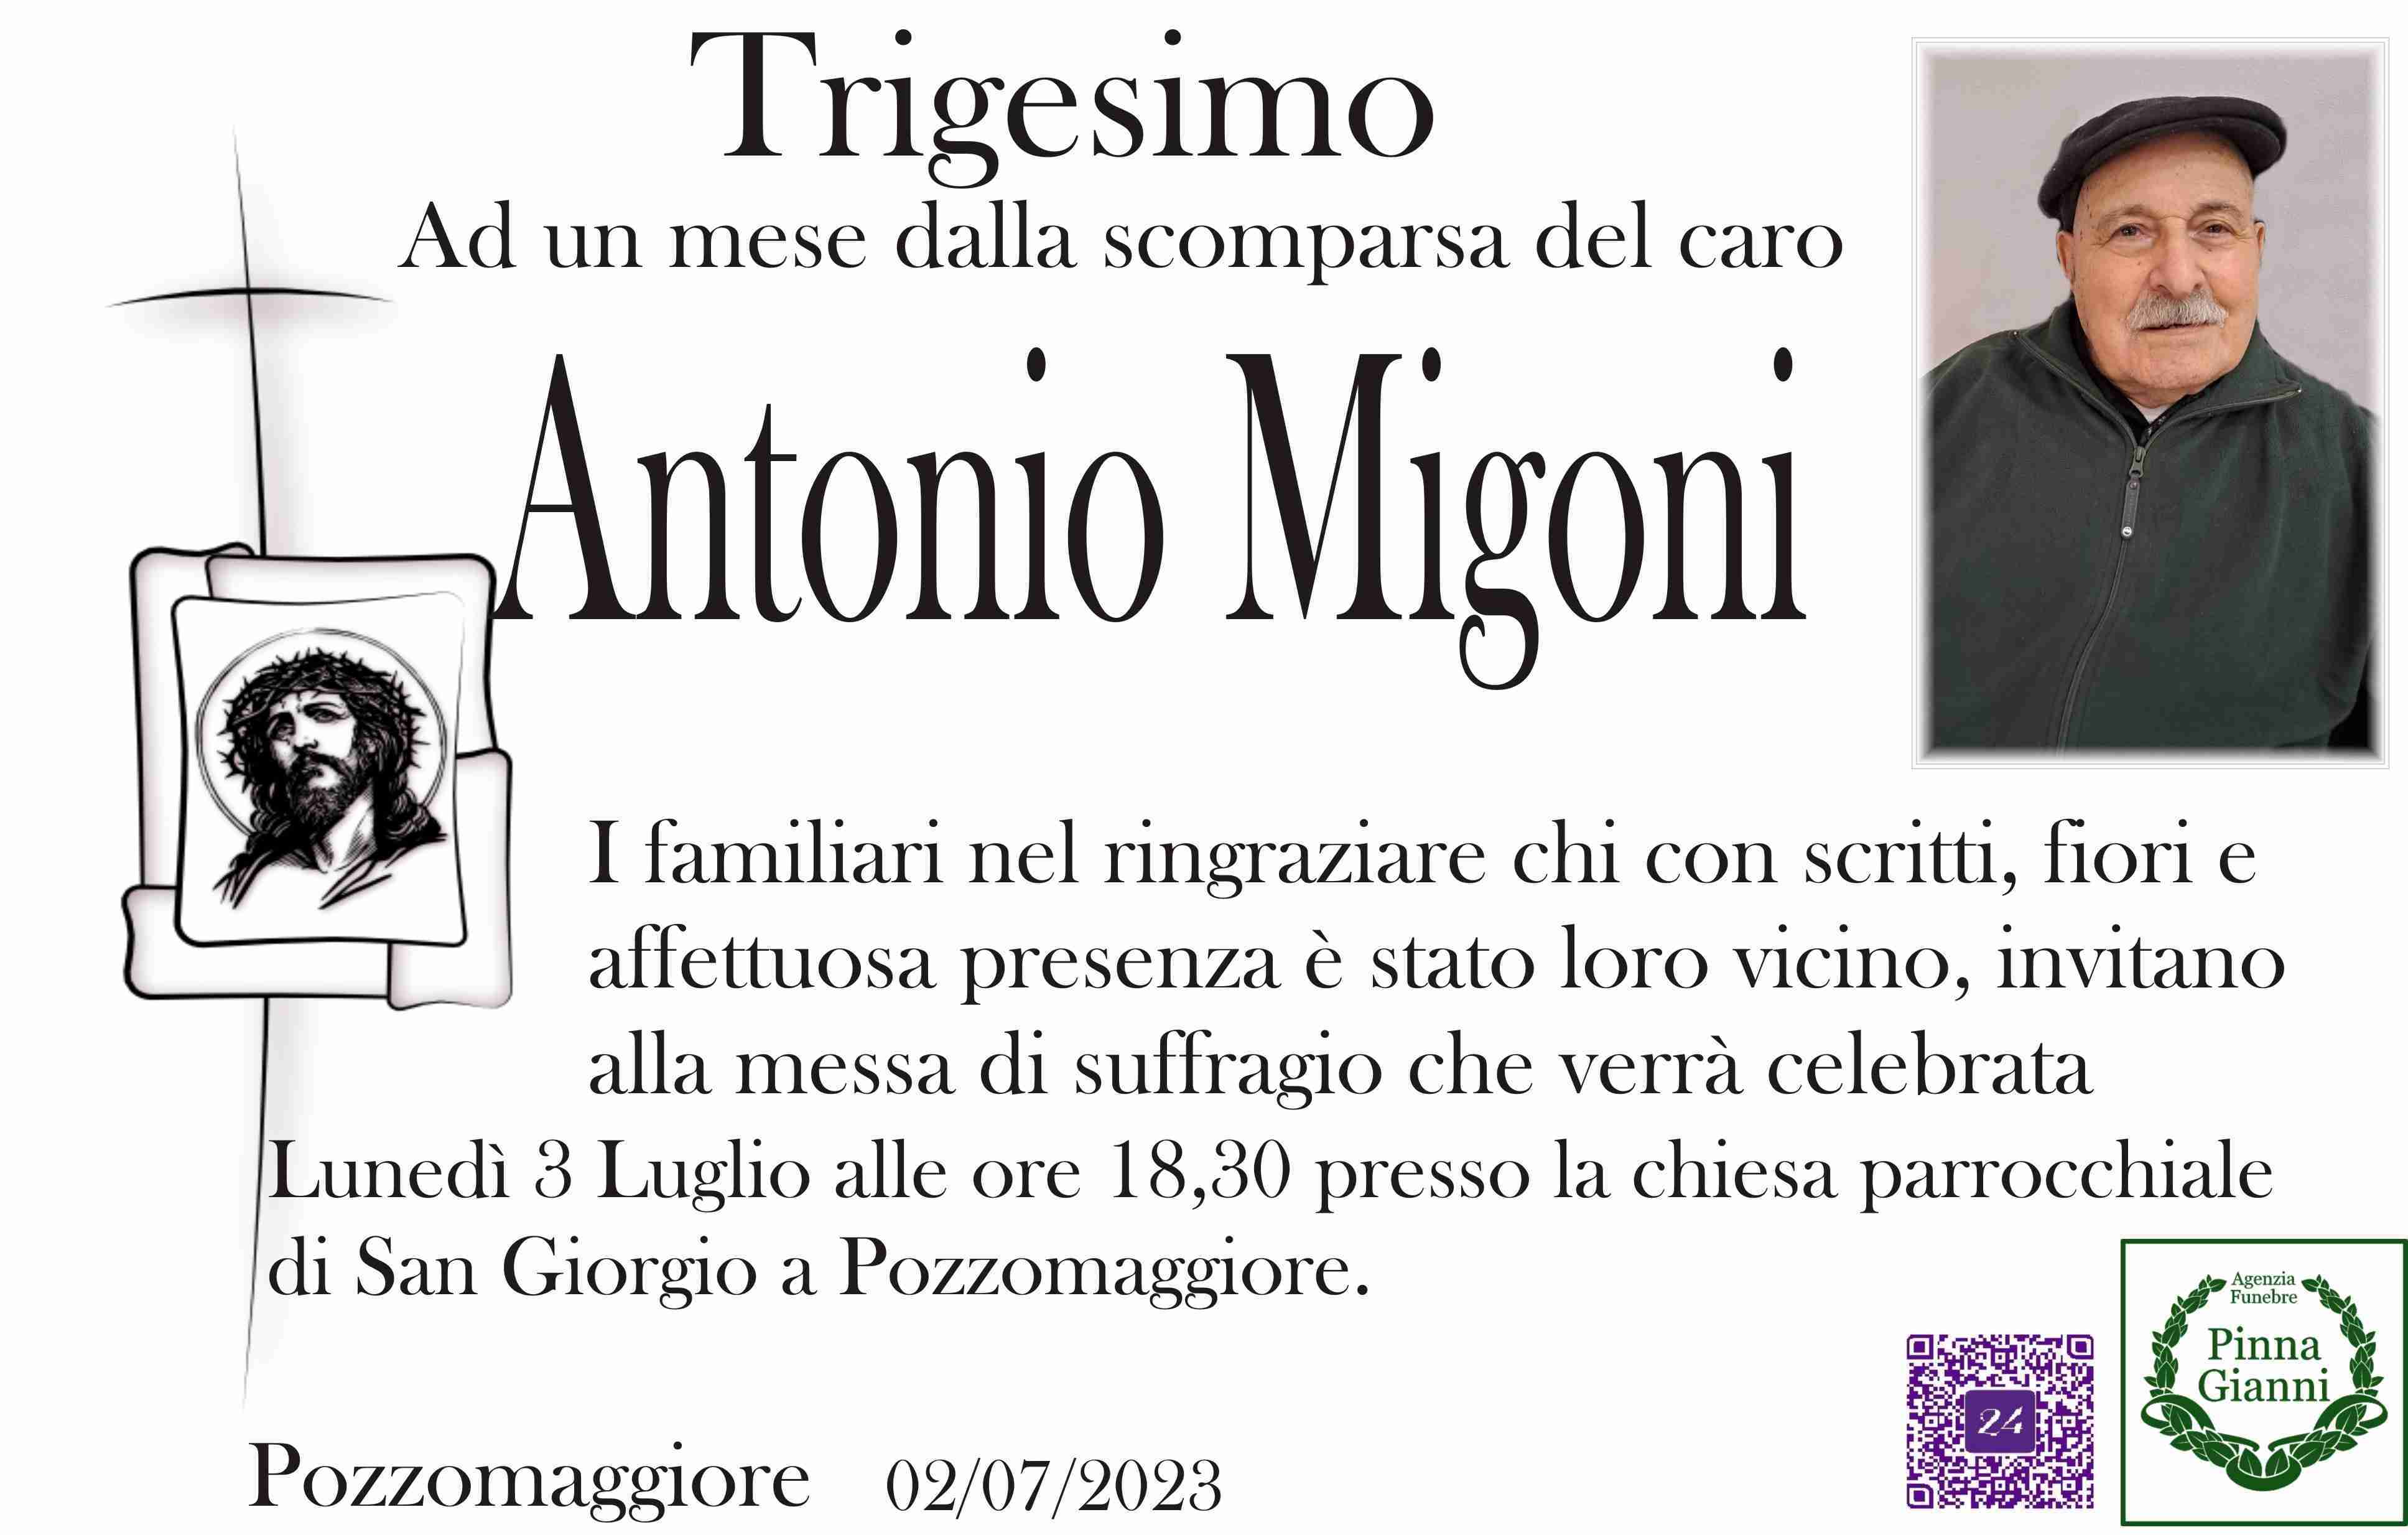 Antonio Migoni